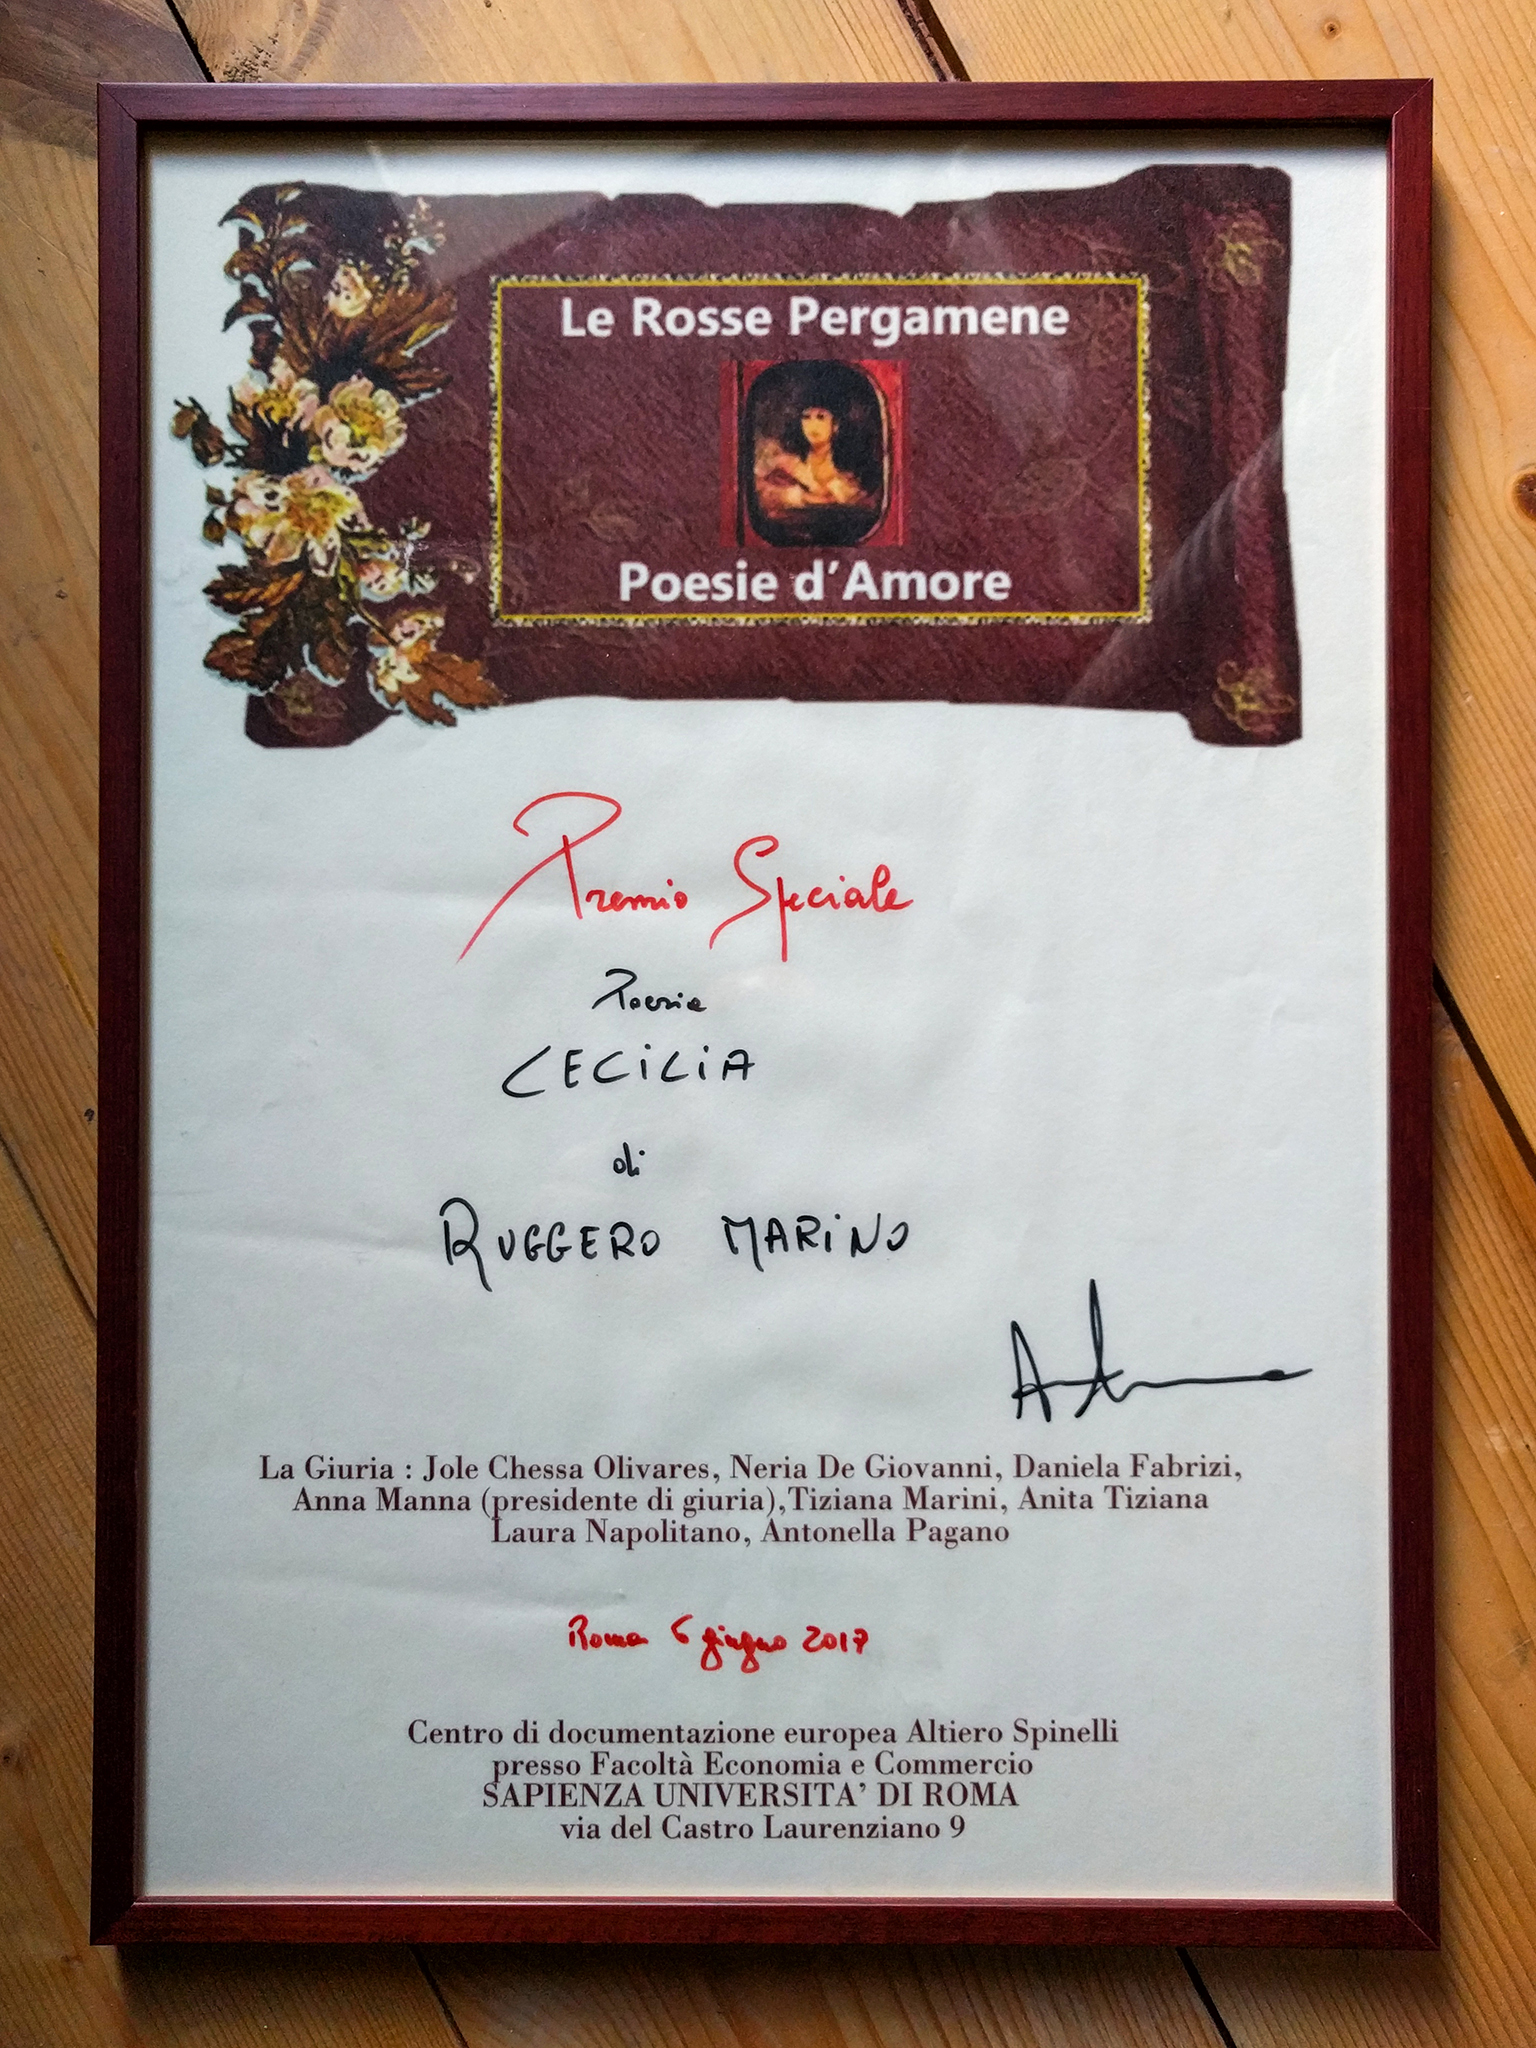 2017 premio Le Rosse Pergamene Poesie d Amore